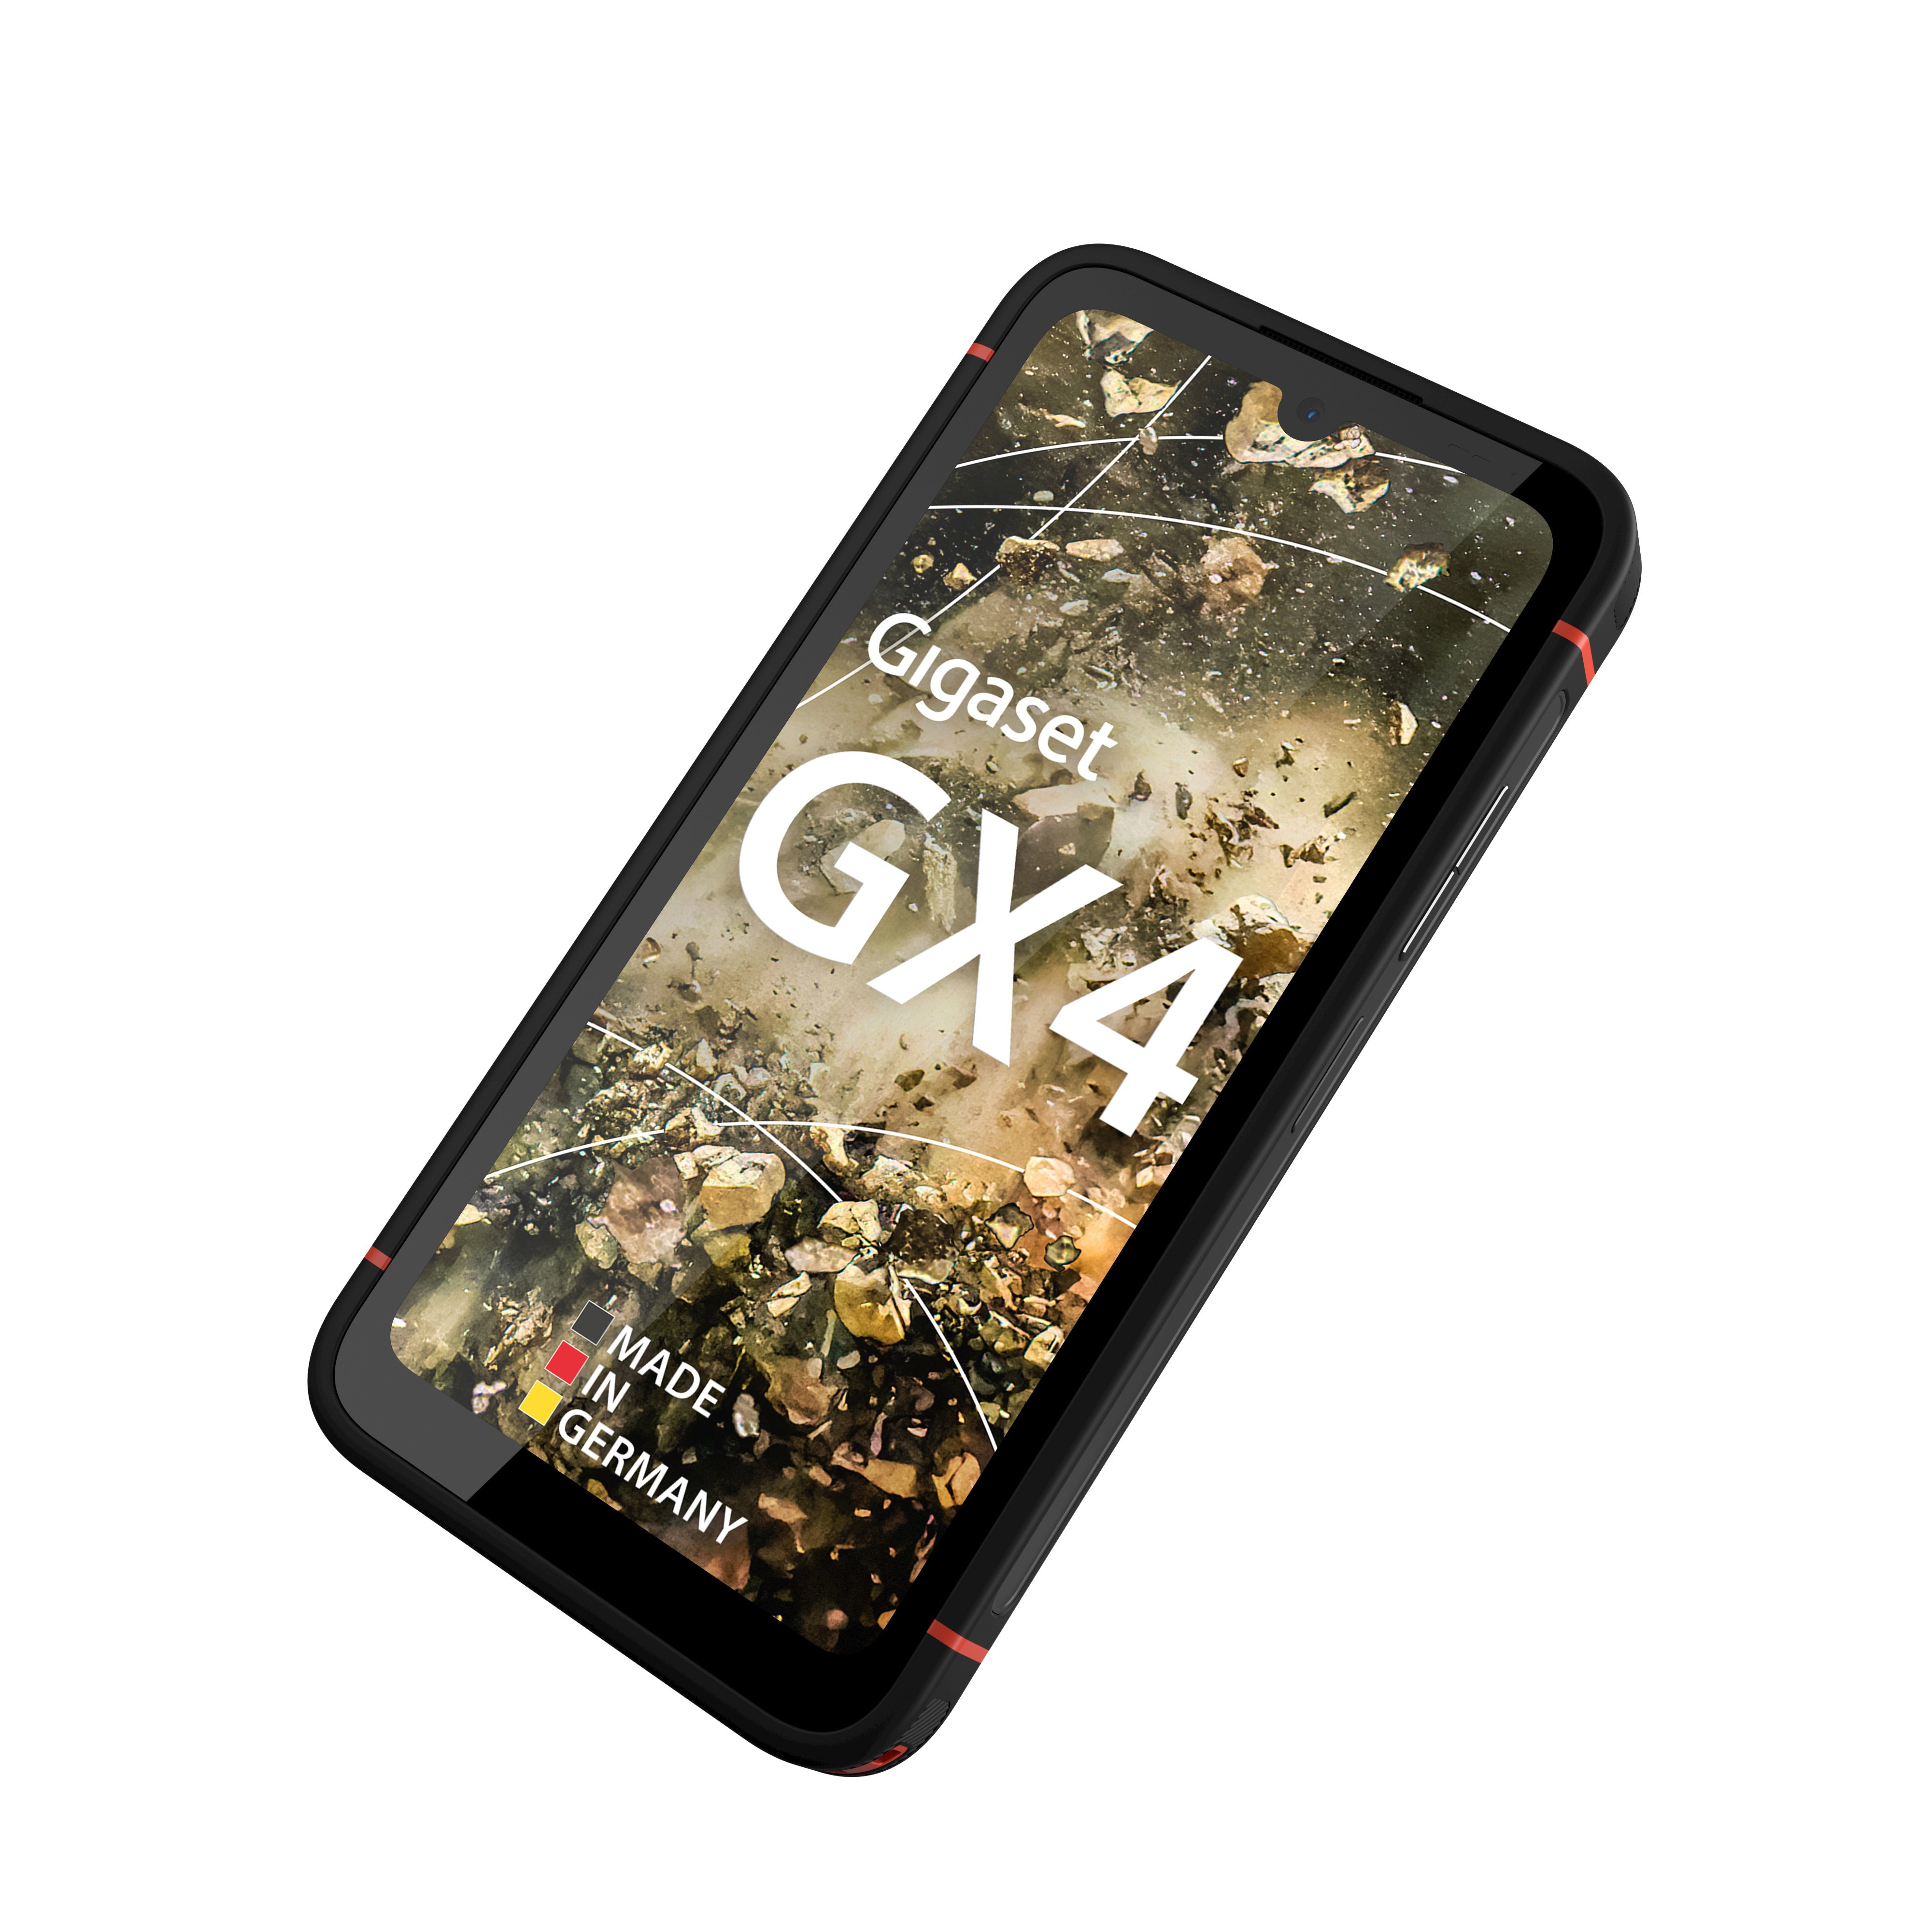 GIGASET GX4 64 GB Black Dual SIM